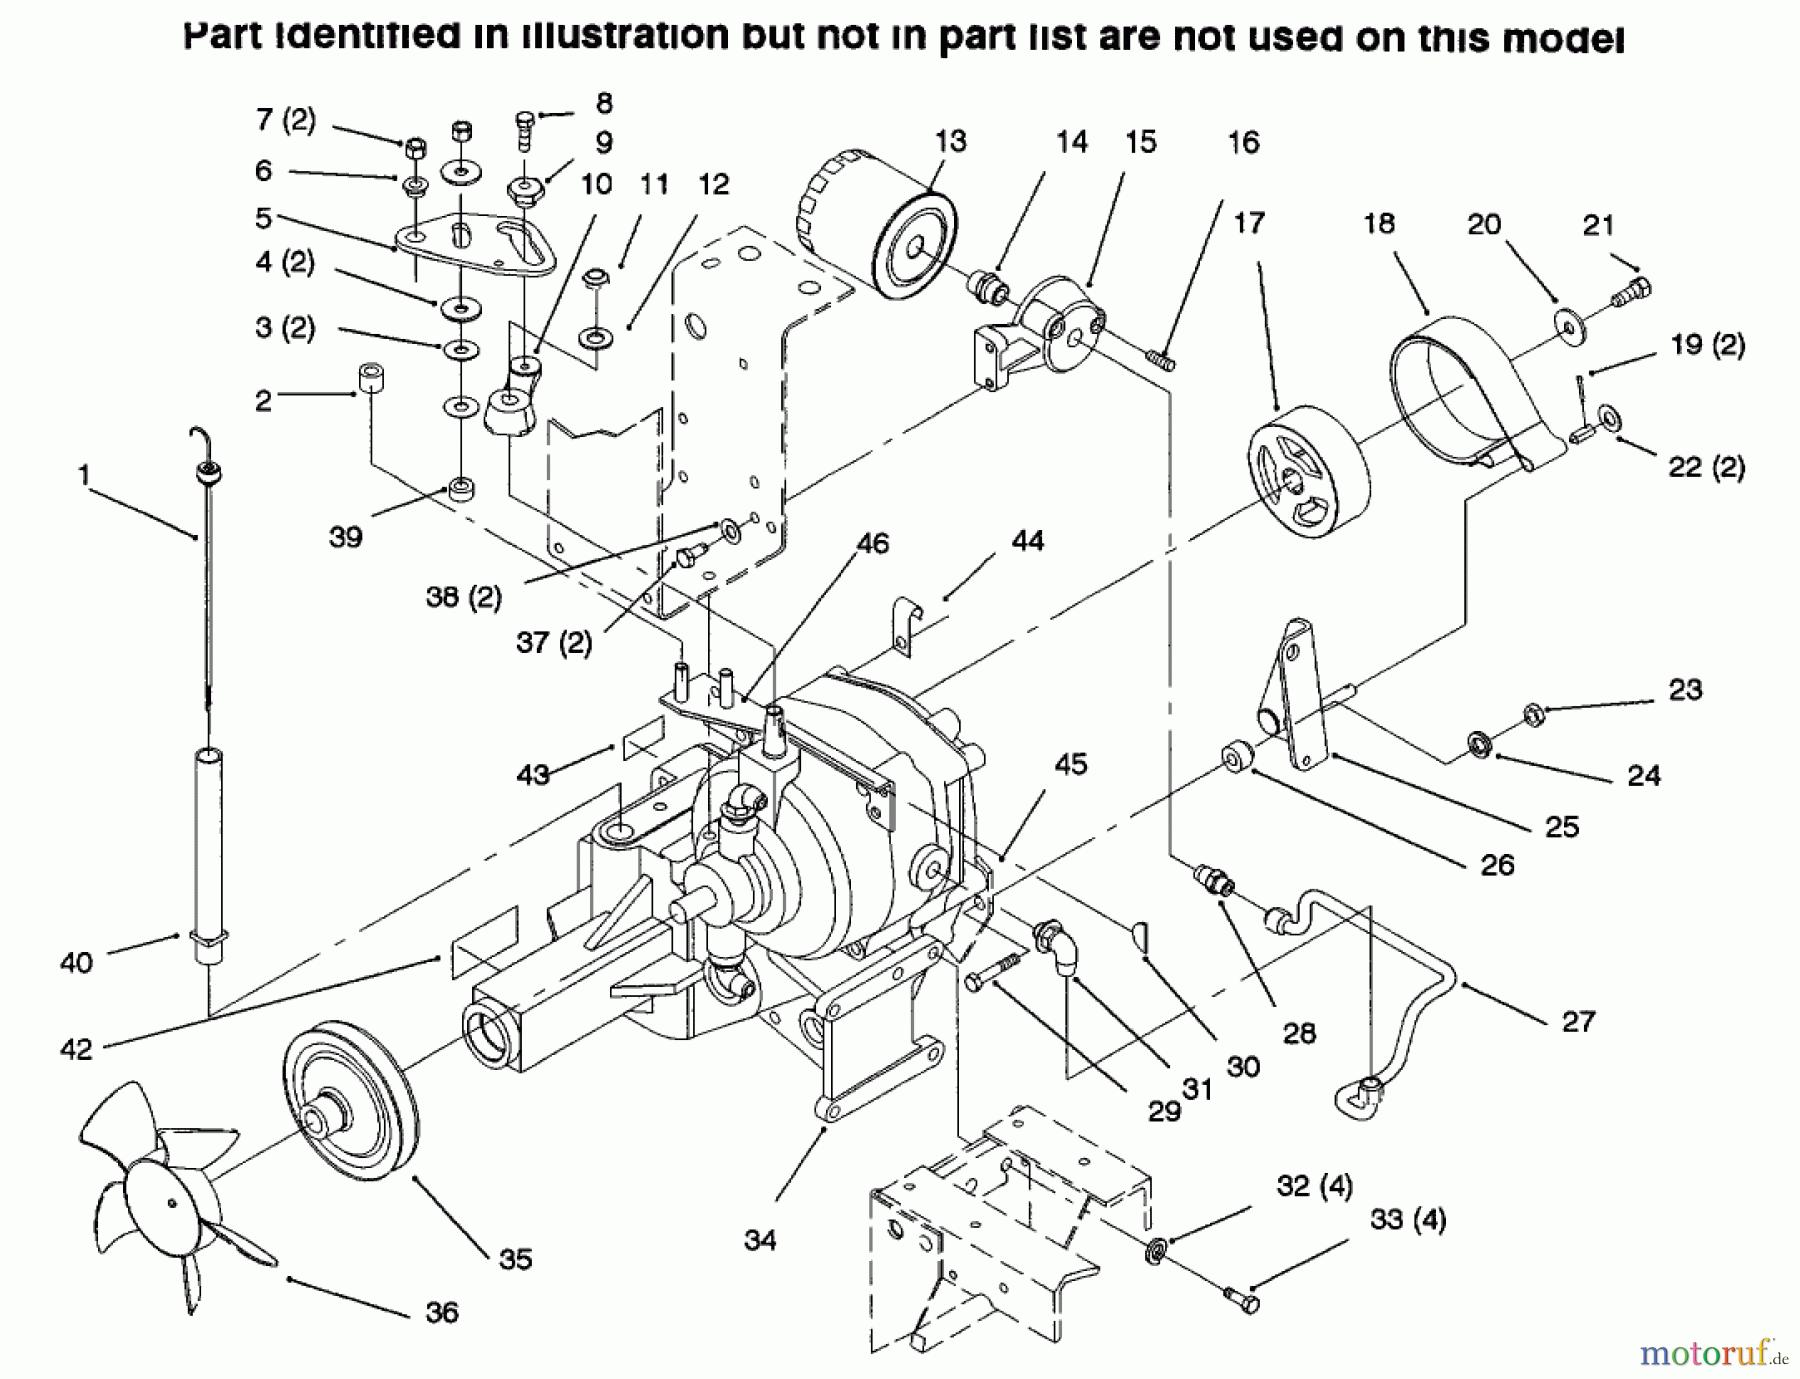  Toro Neu Mowers, Lawn & Garden Tractor Seite 1 73502 (520-H) - Toro 520-H Garden Tractor, 1996 (6900001-6999999) TRANSMISSION